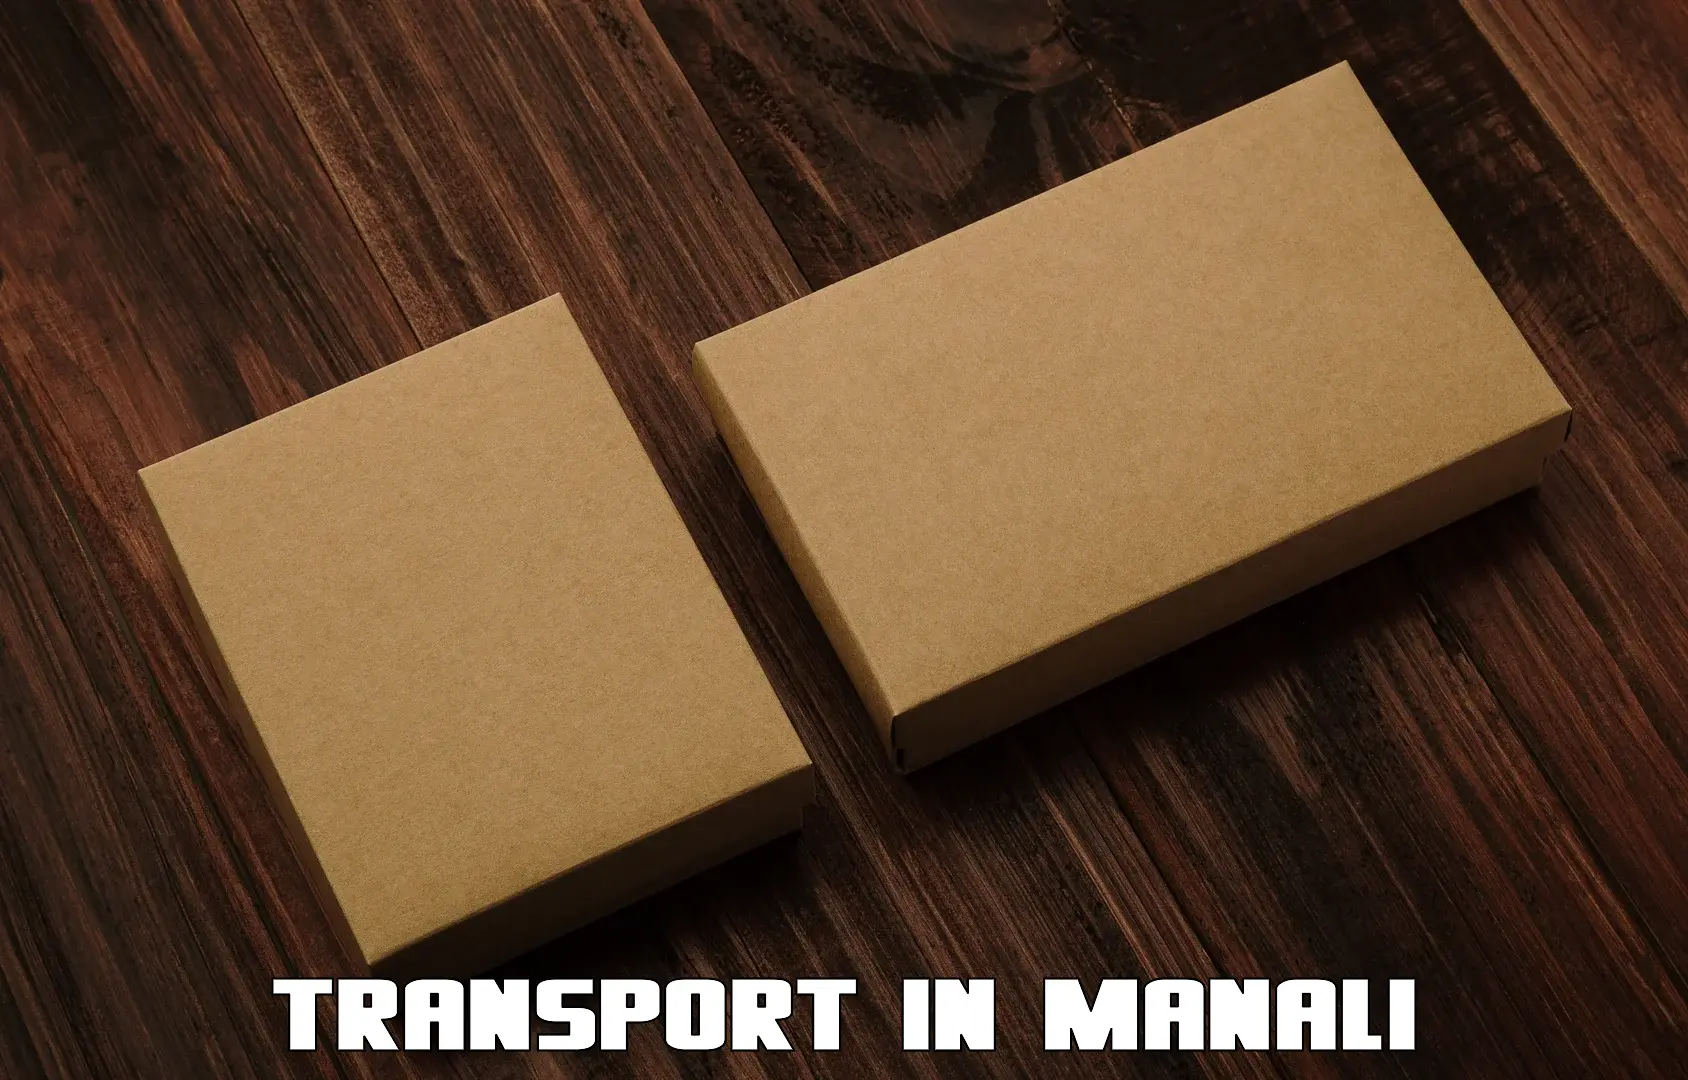 Nearest transport service in Manali